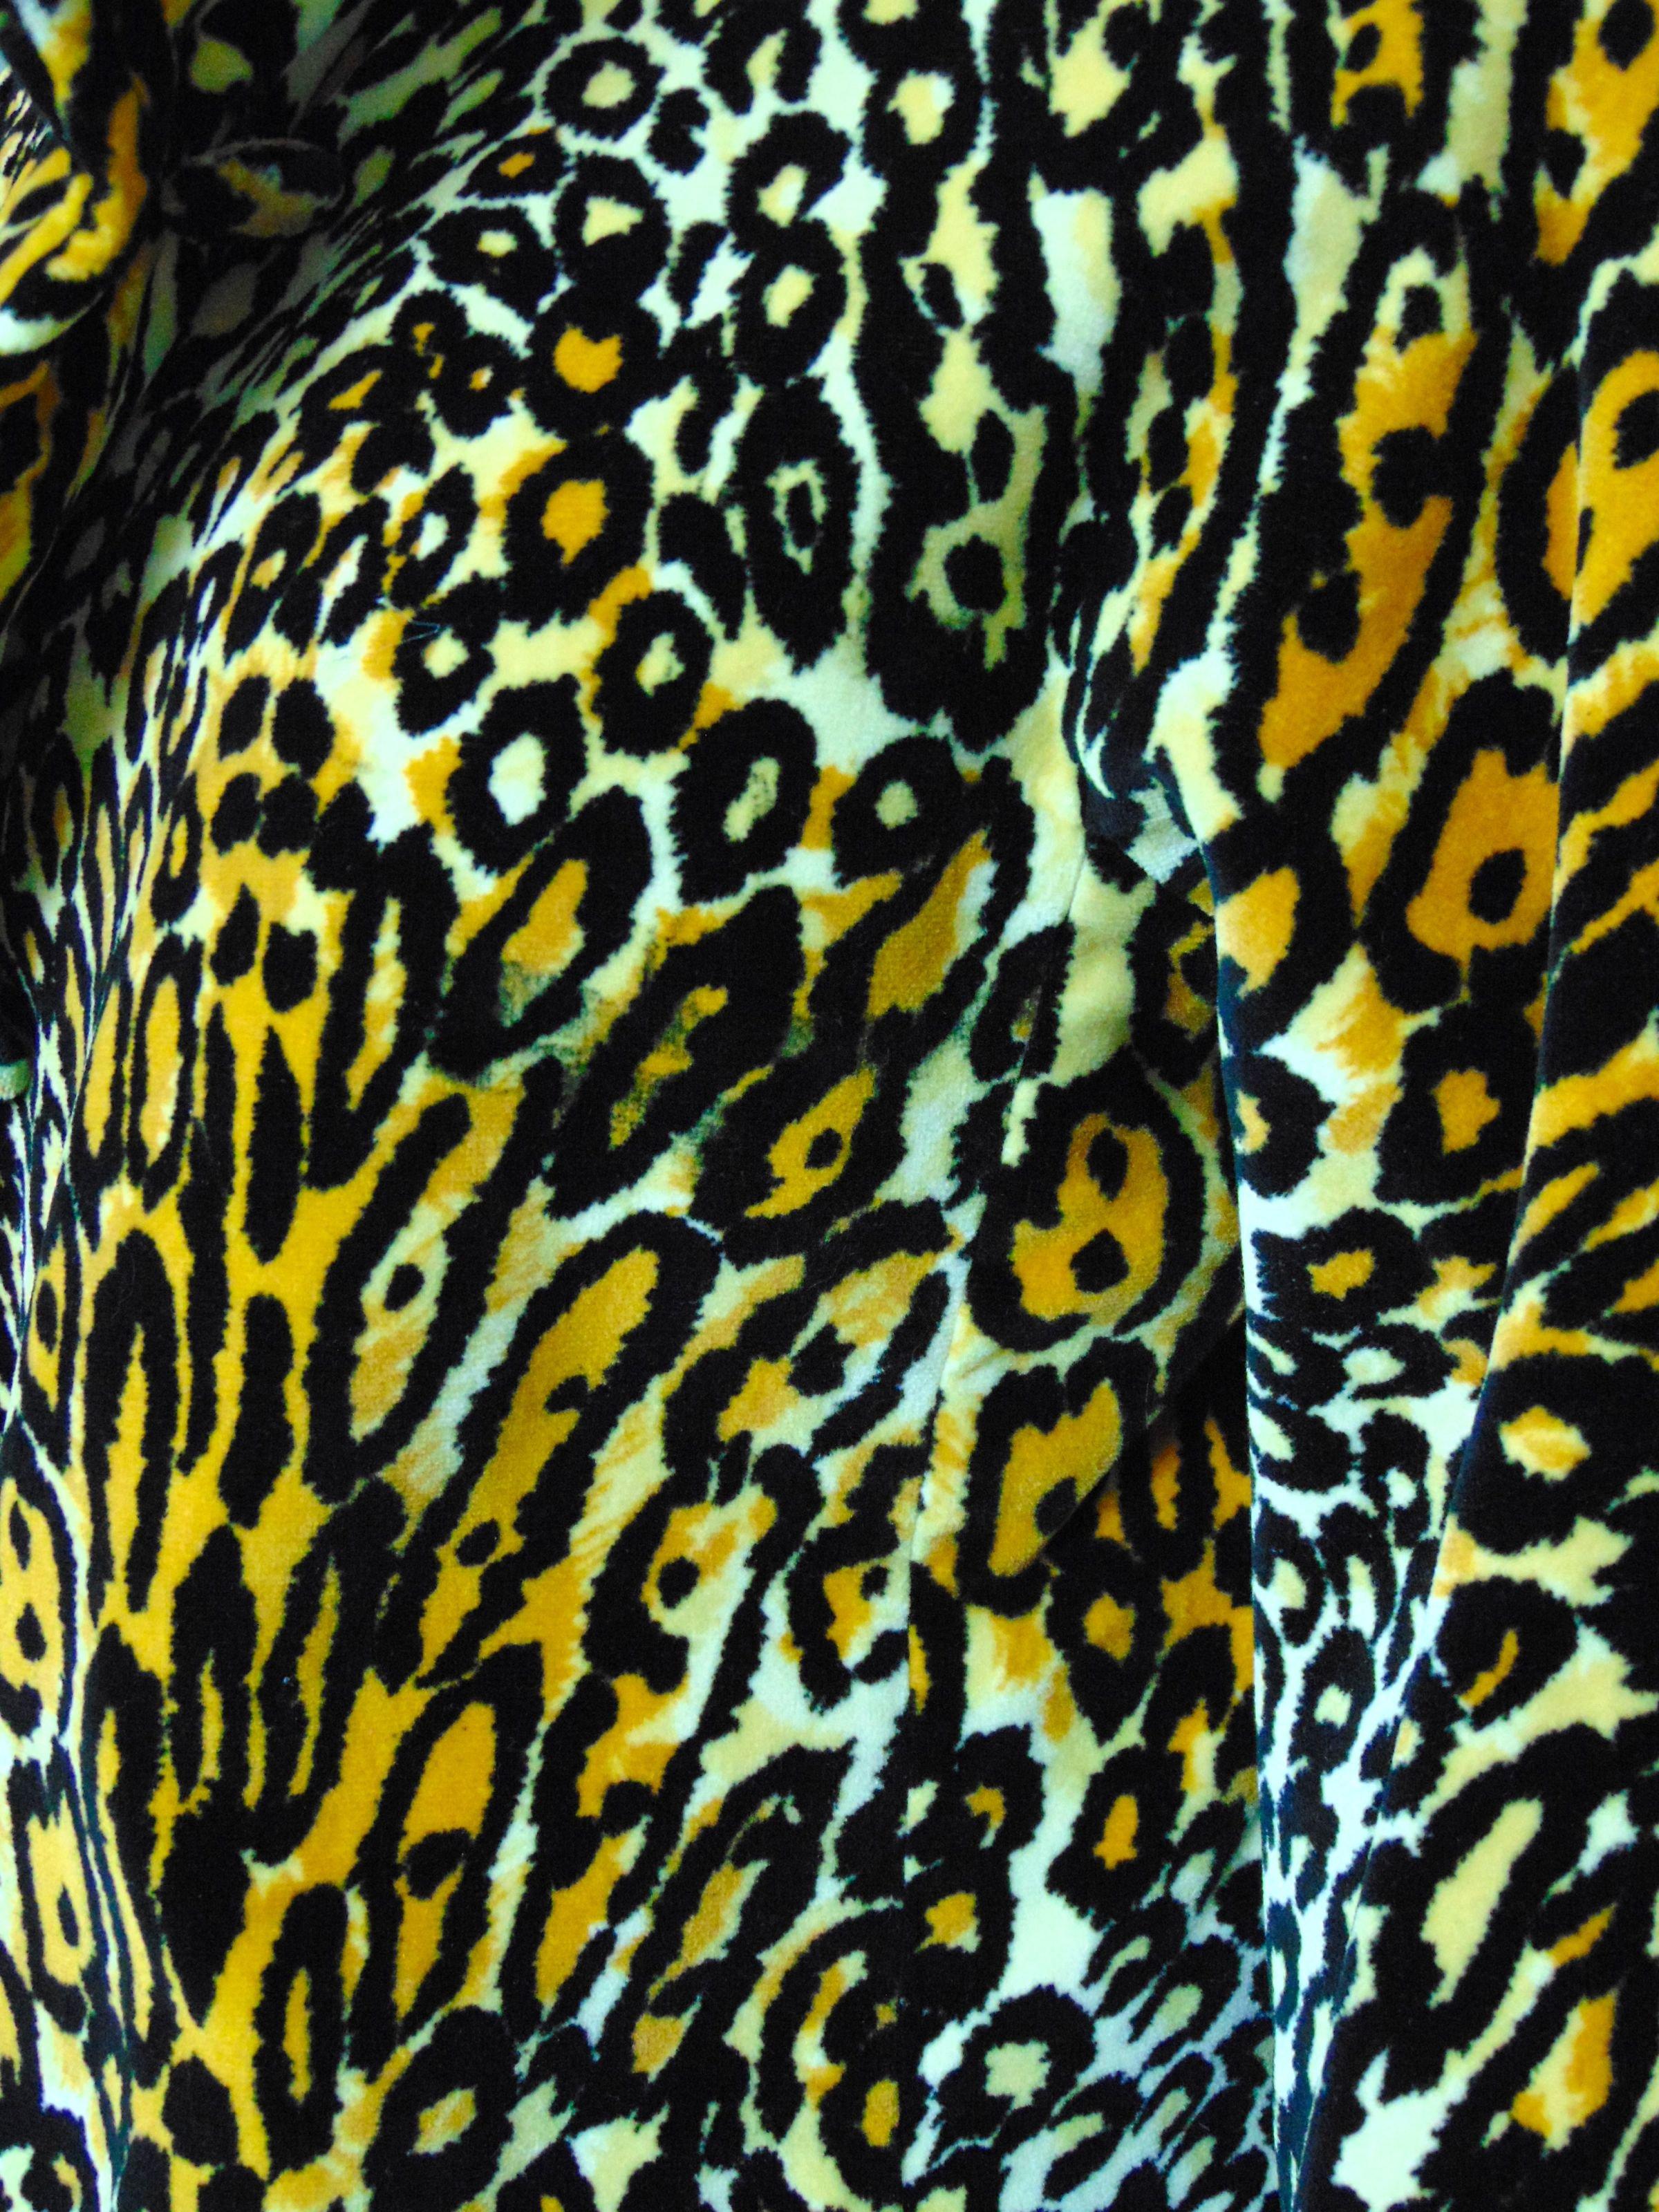 Bill Blass for Bond Street Velvet Leopard Print Coat 1970s Sz M 2